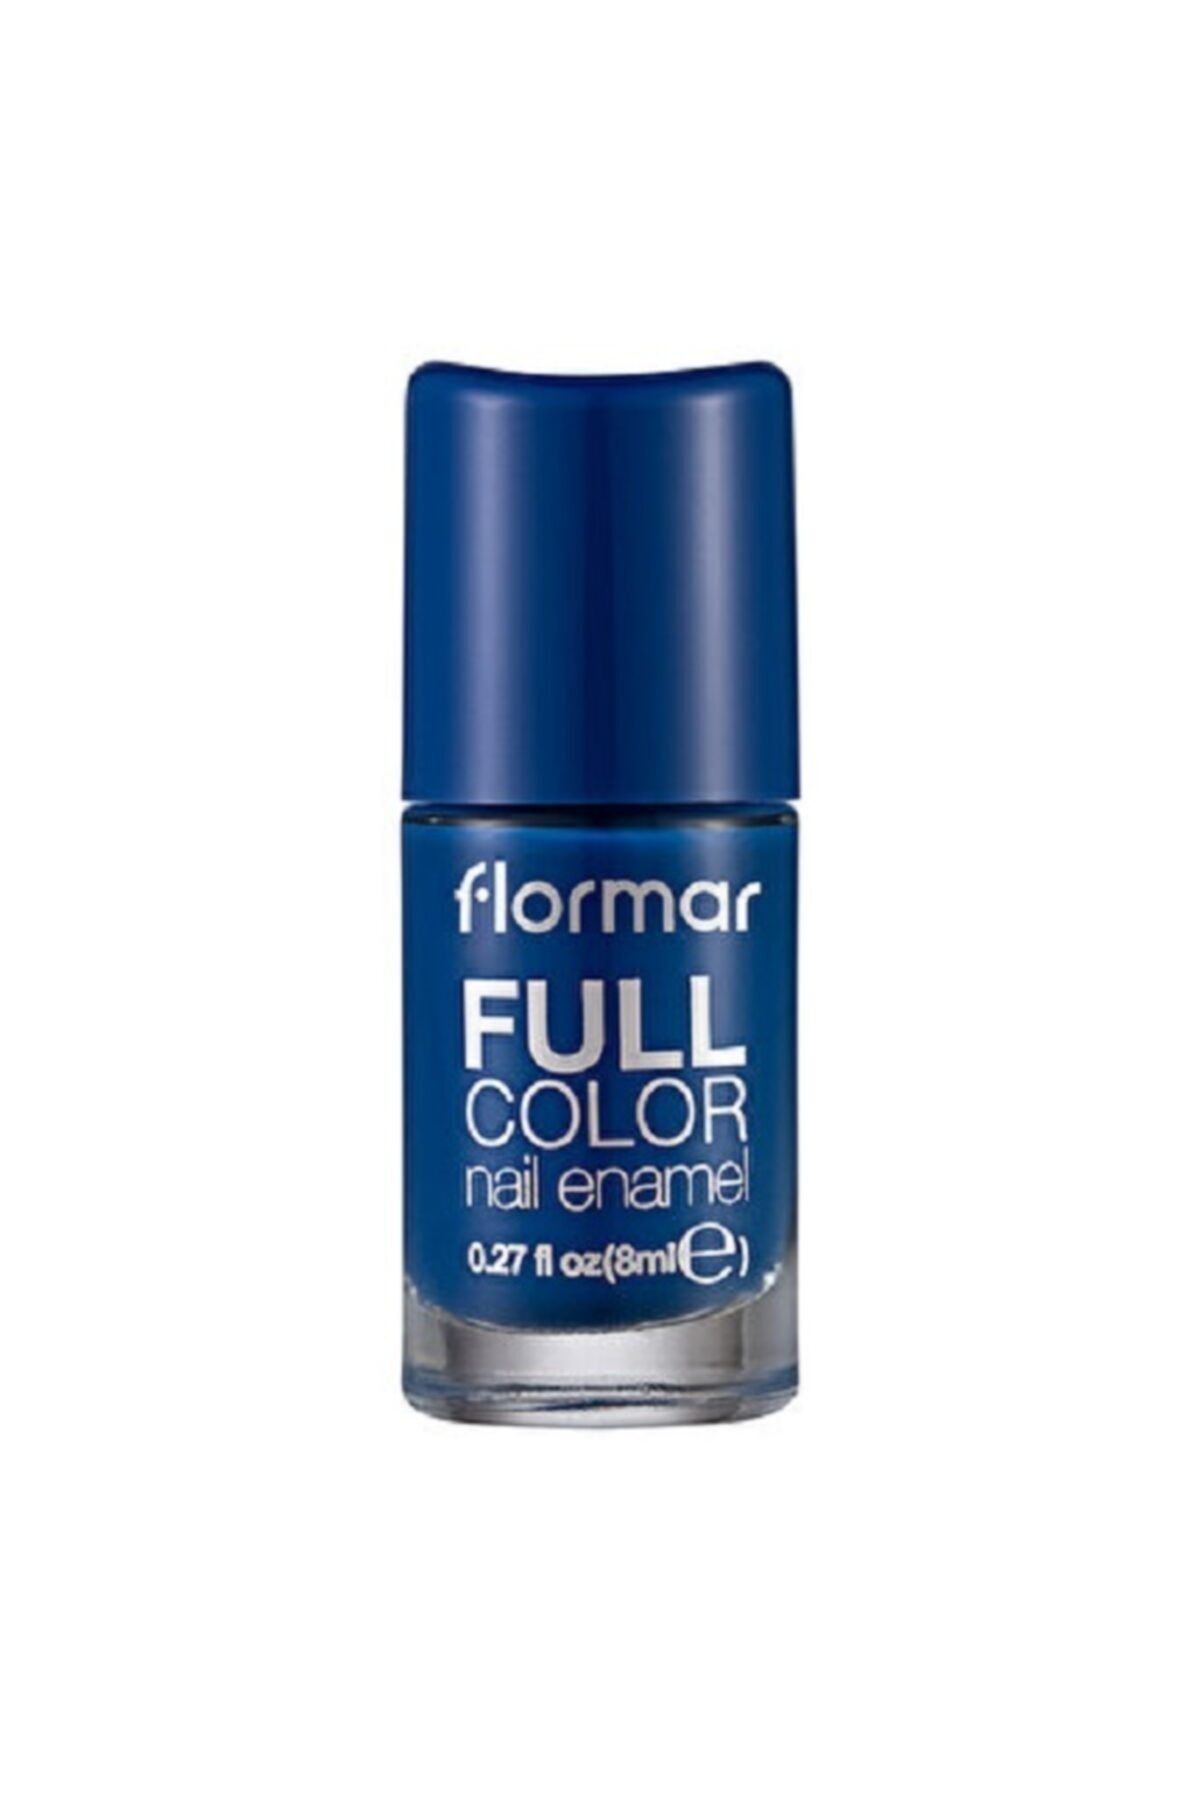 Flormar Full Color Naıl Enamel Fc41
ahoy!